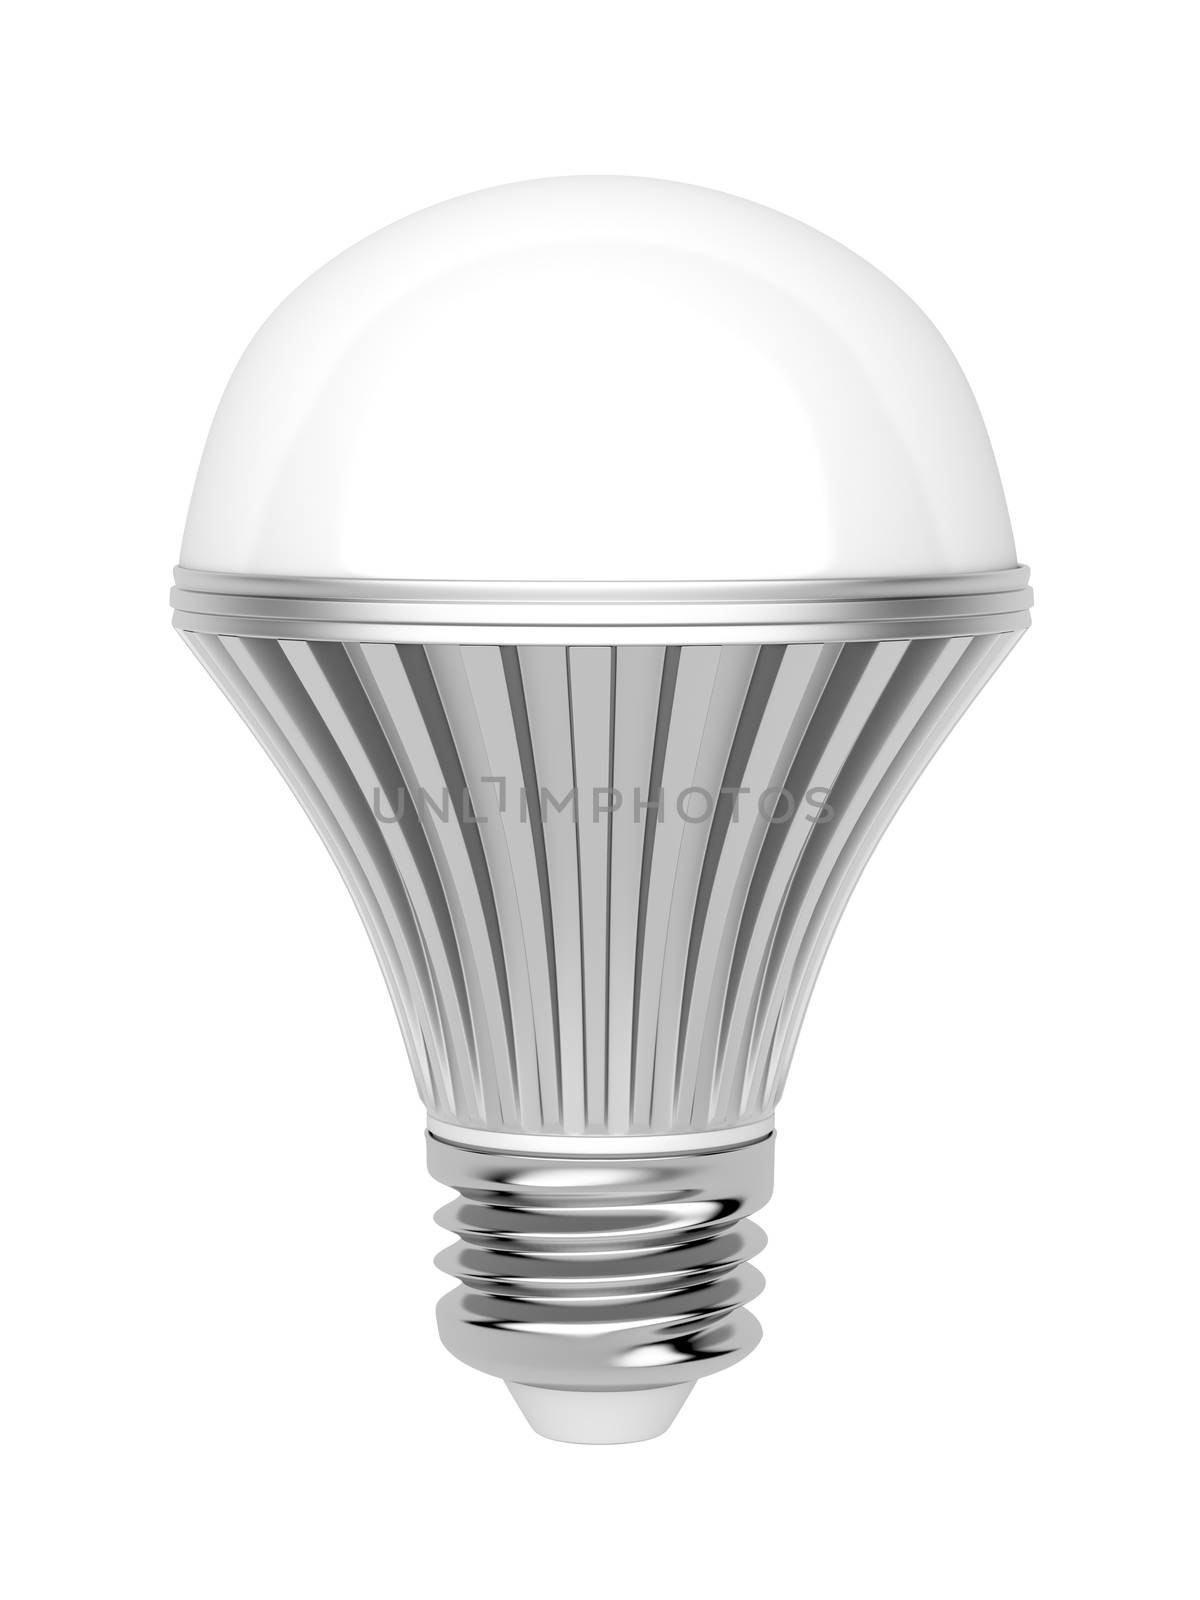 LED bulb on white background 